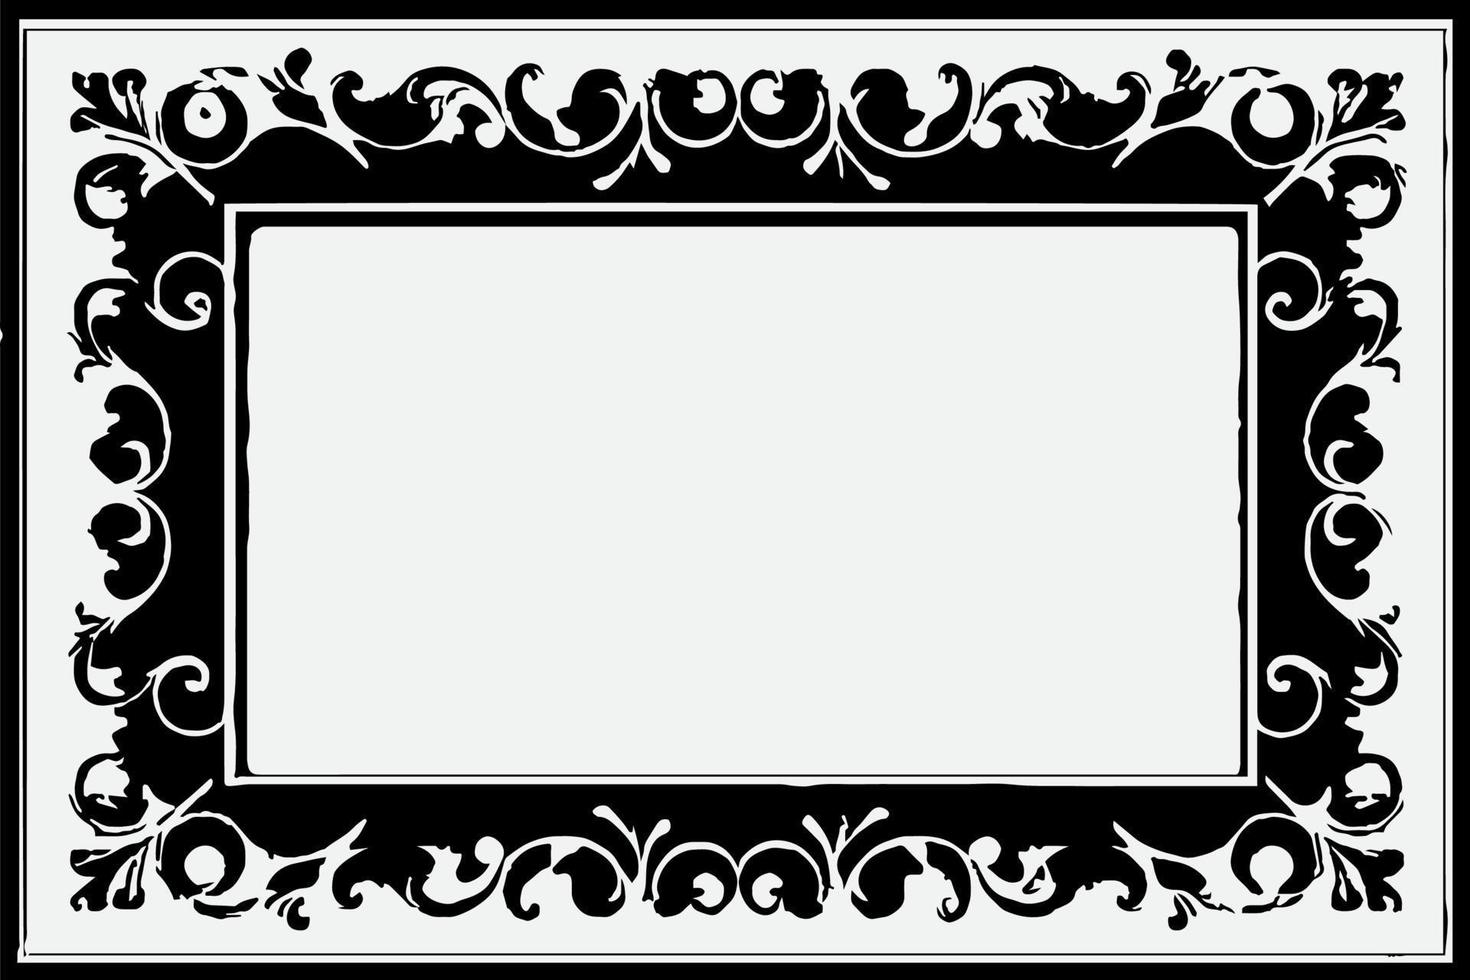 cuadrado marco con grunge negro tinta ornamento alrededor el bordes, blanco antecedentes en vector eps formato.